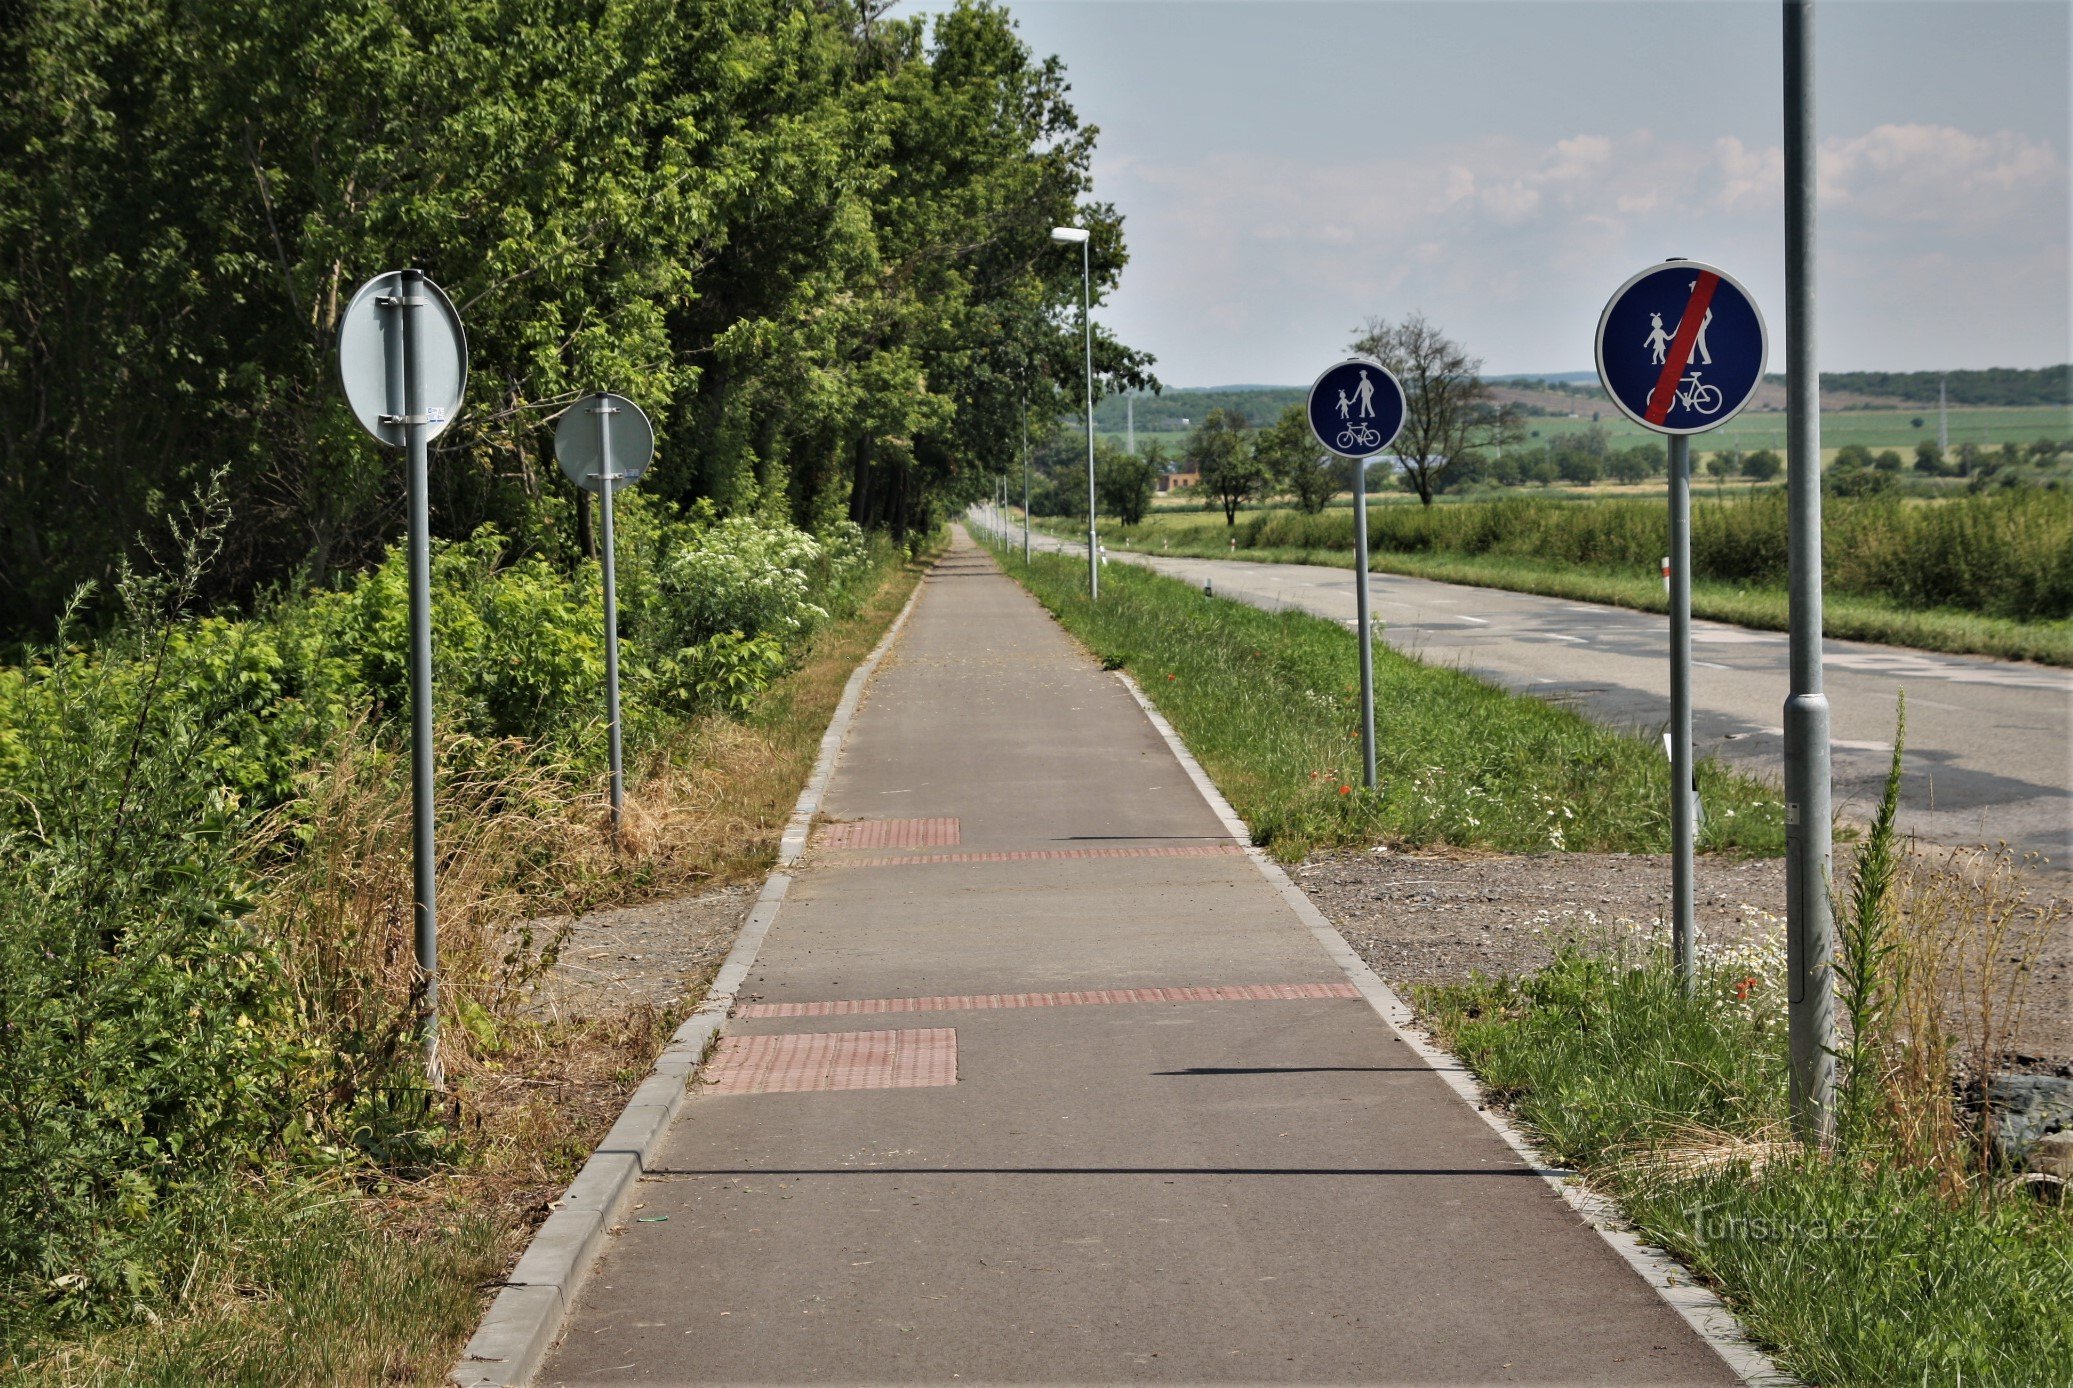 Зеленая туристическая дорожка ведет вдоль велосипедной дорожки от железнодорожного вокзала до поселка Заечи.